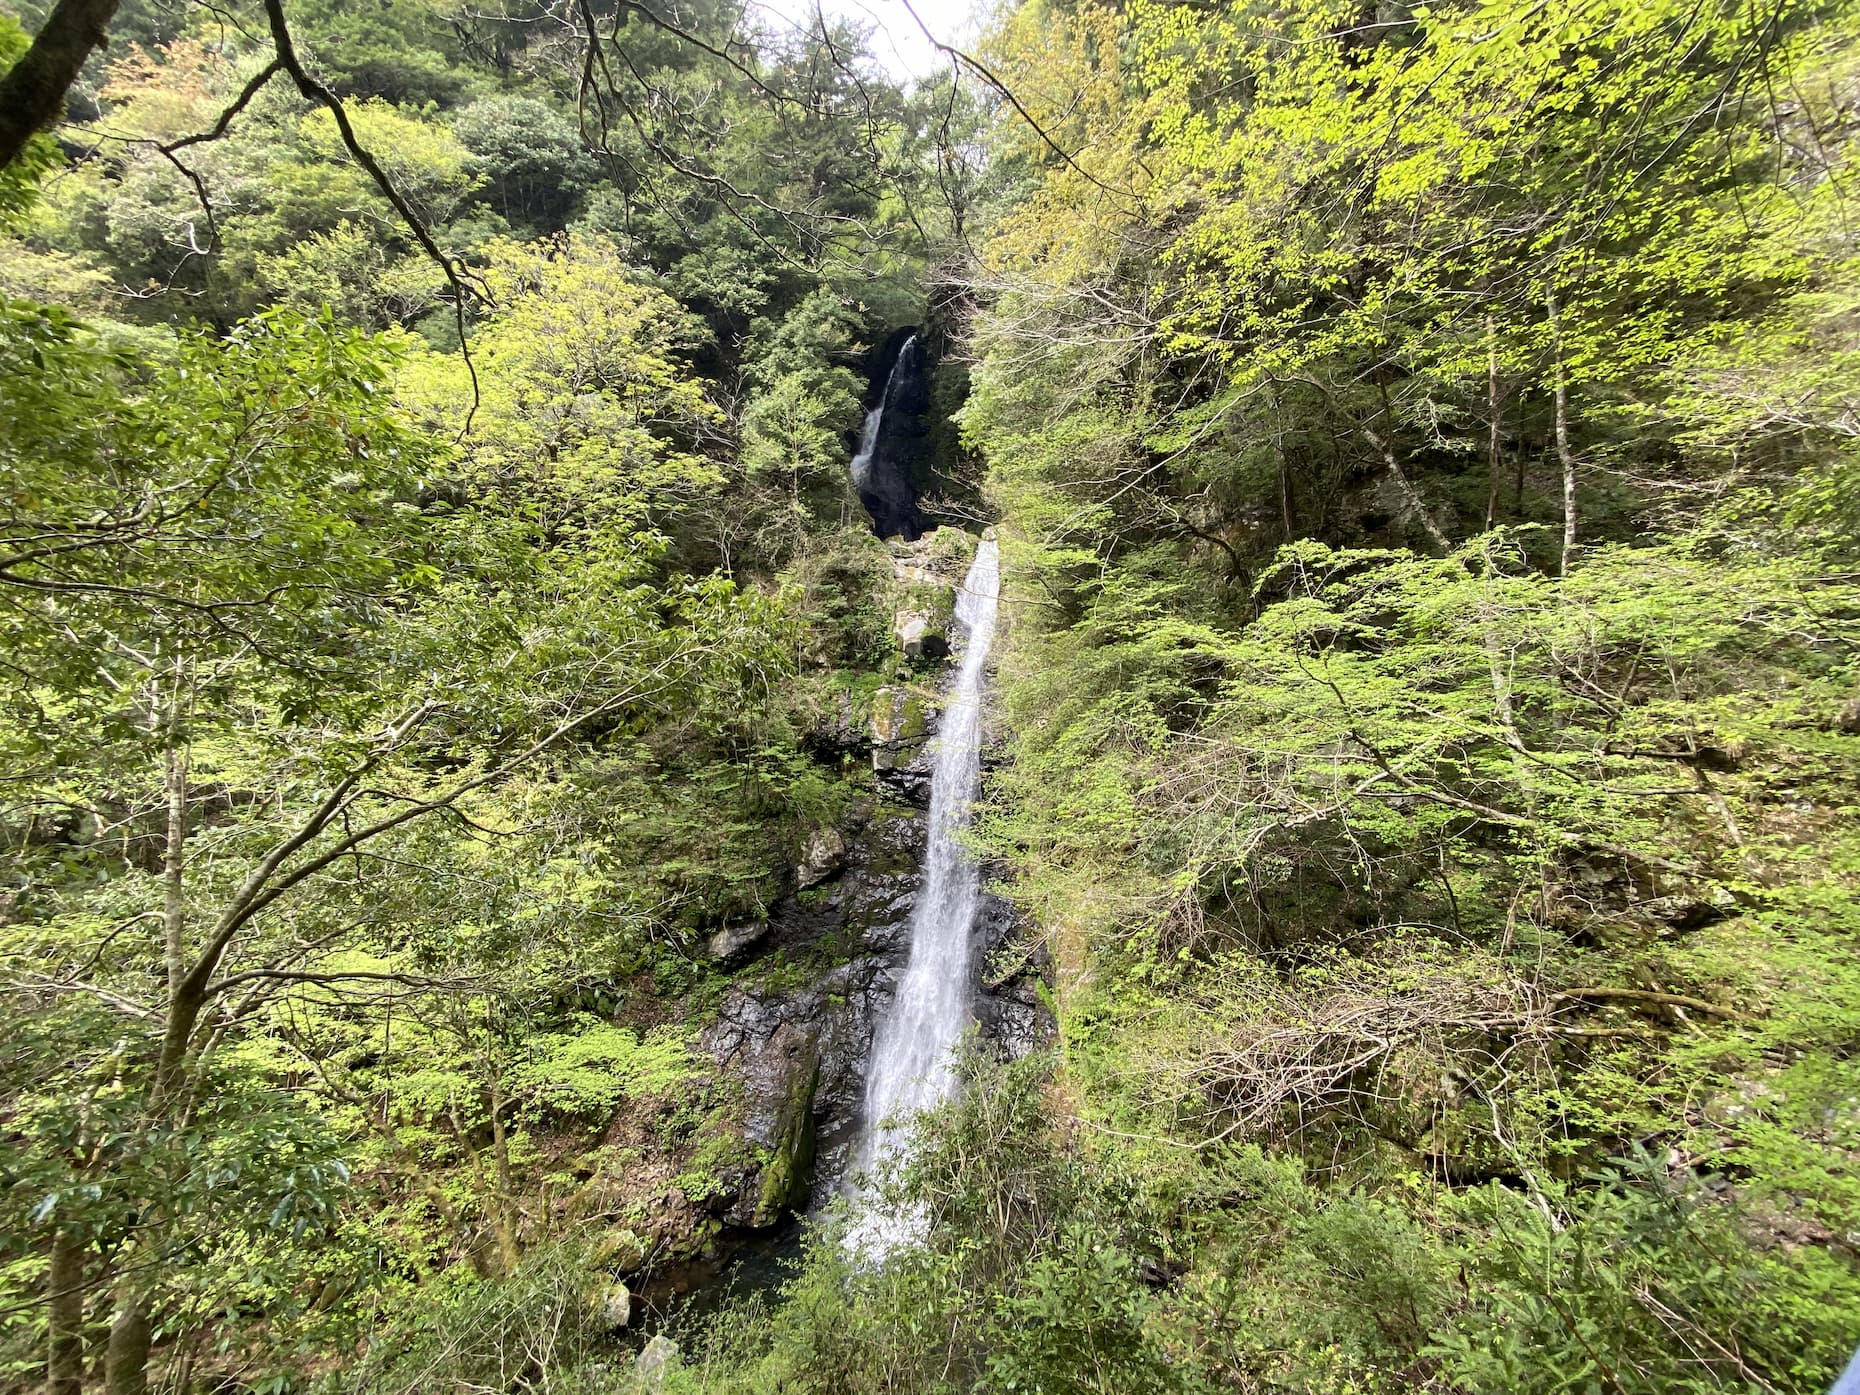 対岸の斜面から見た瀬戸の滝。二段の落差は49メートルもある